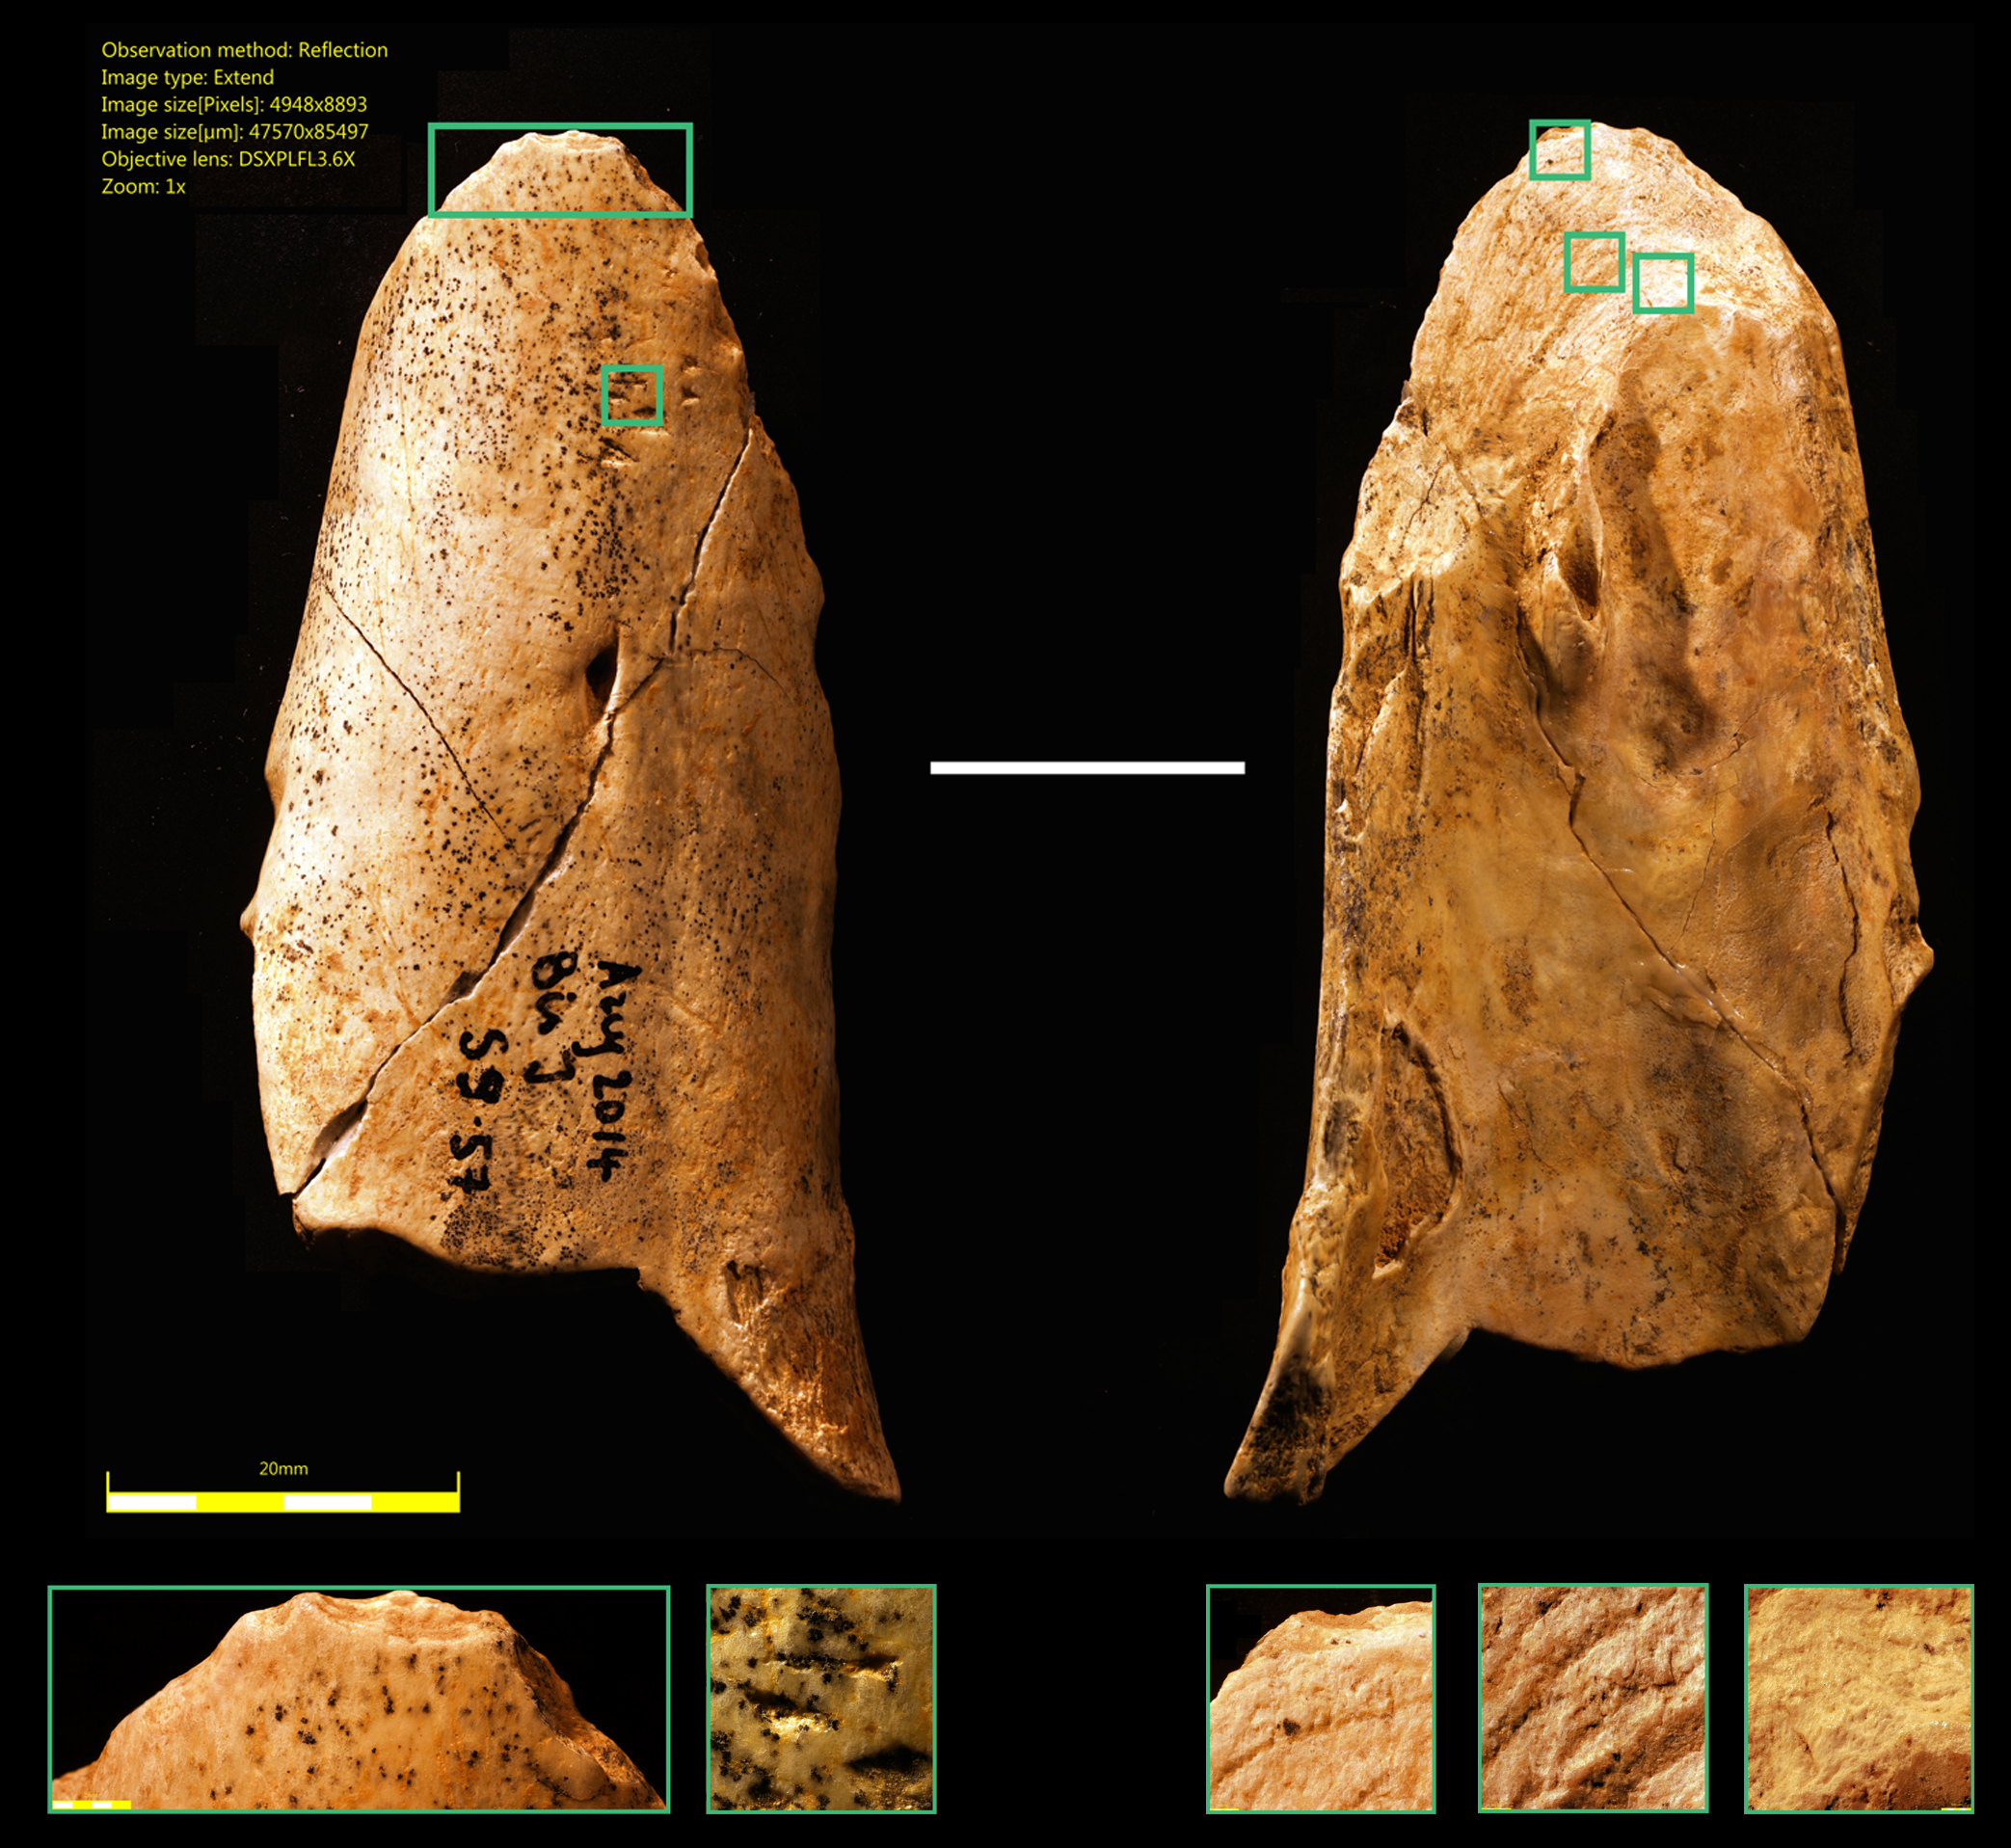 Herramienta de hueso encontrada por los investigadores de la Universidad de Montreal. Fuente: Alphagalileo.